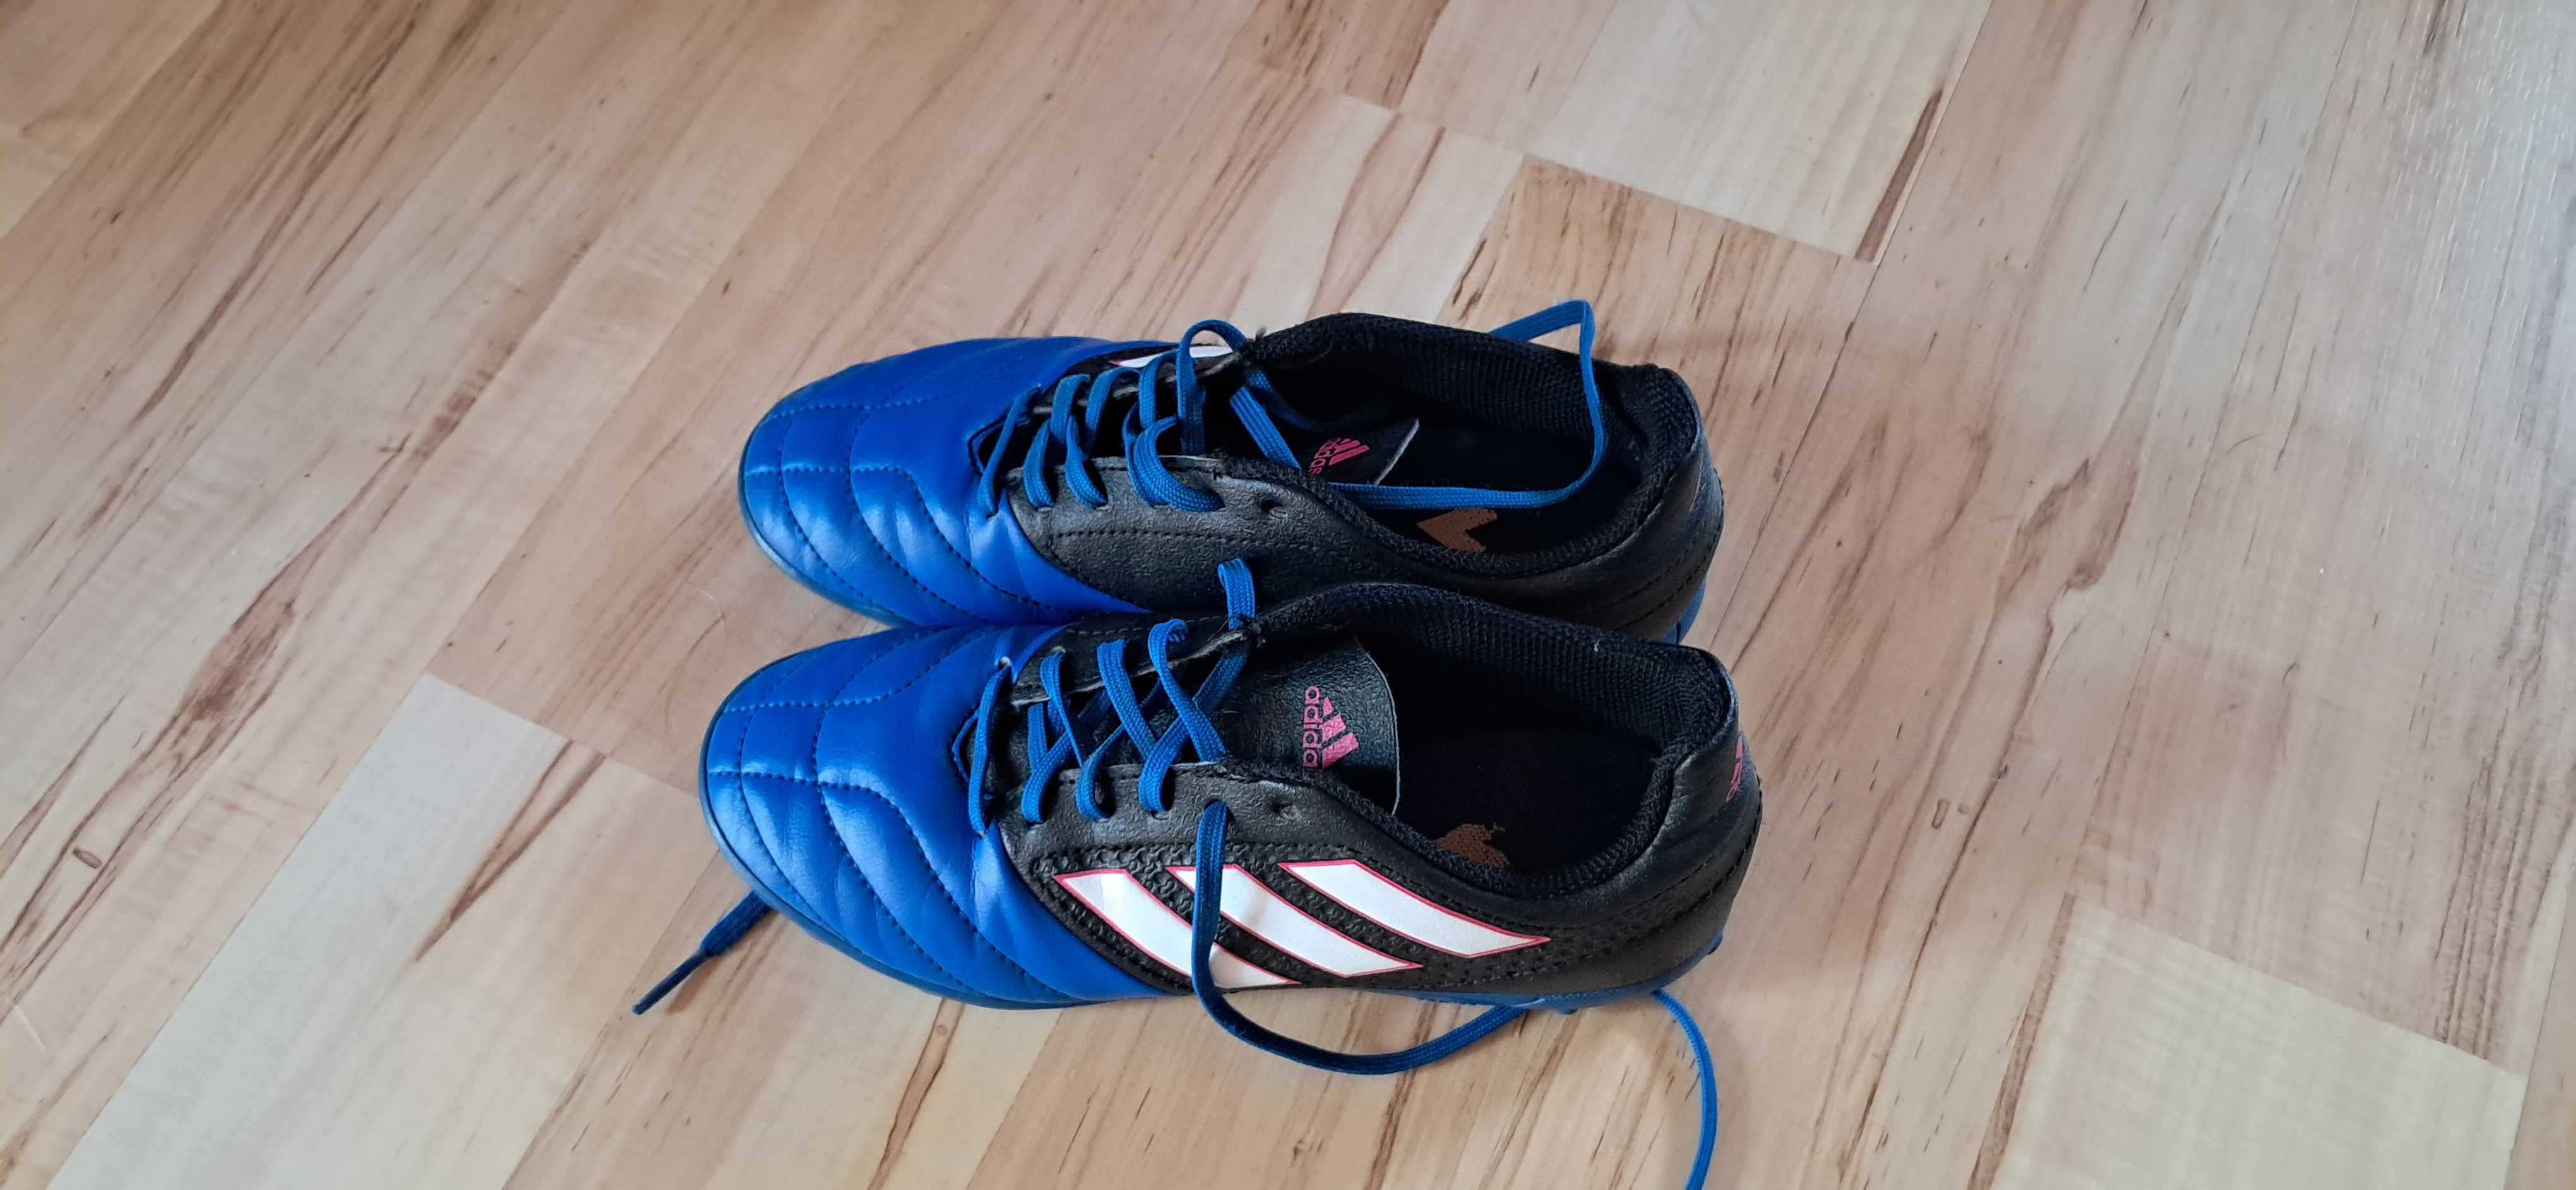 Adidas buty piłkarskie dla chłopca rozm.35,5